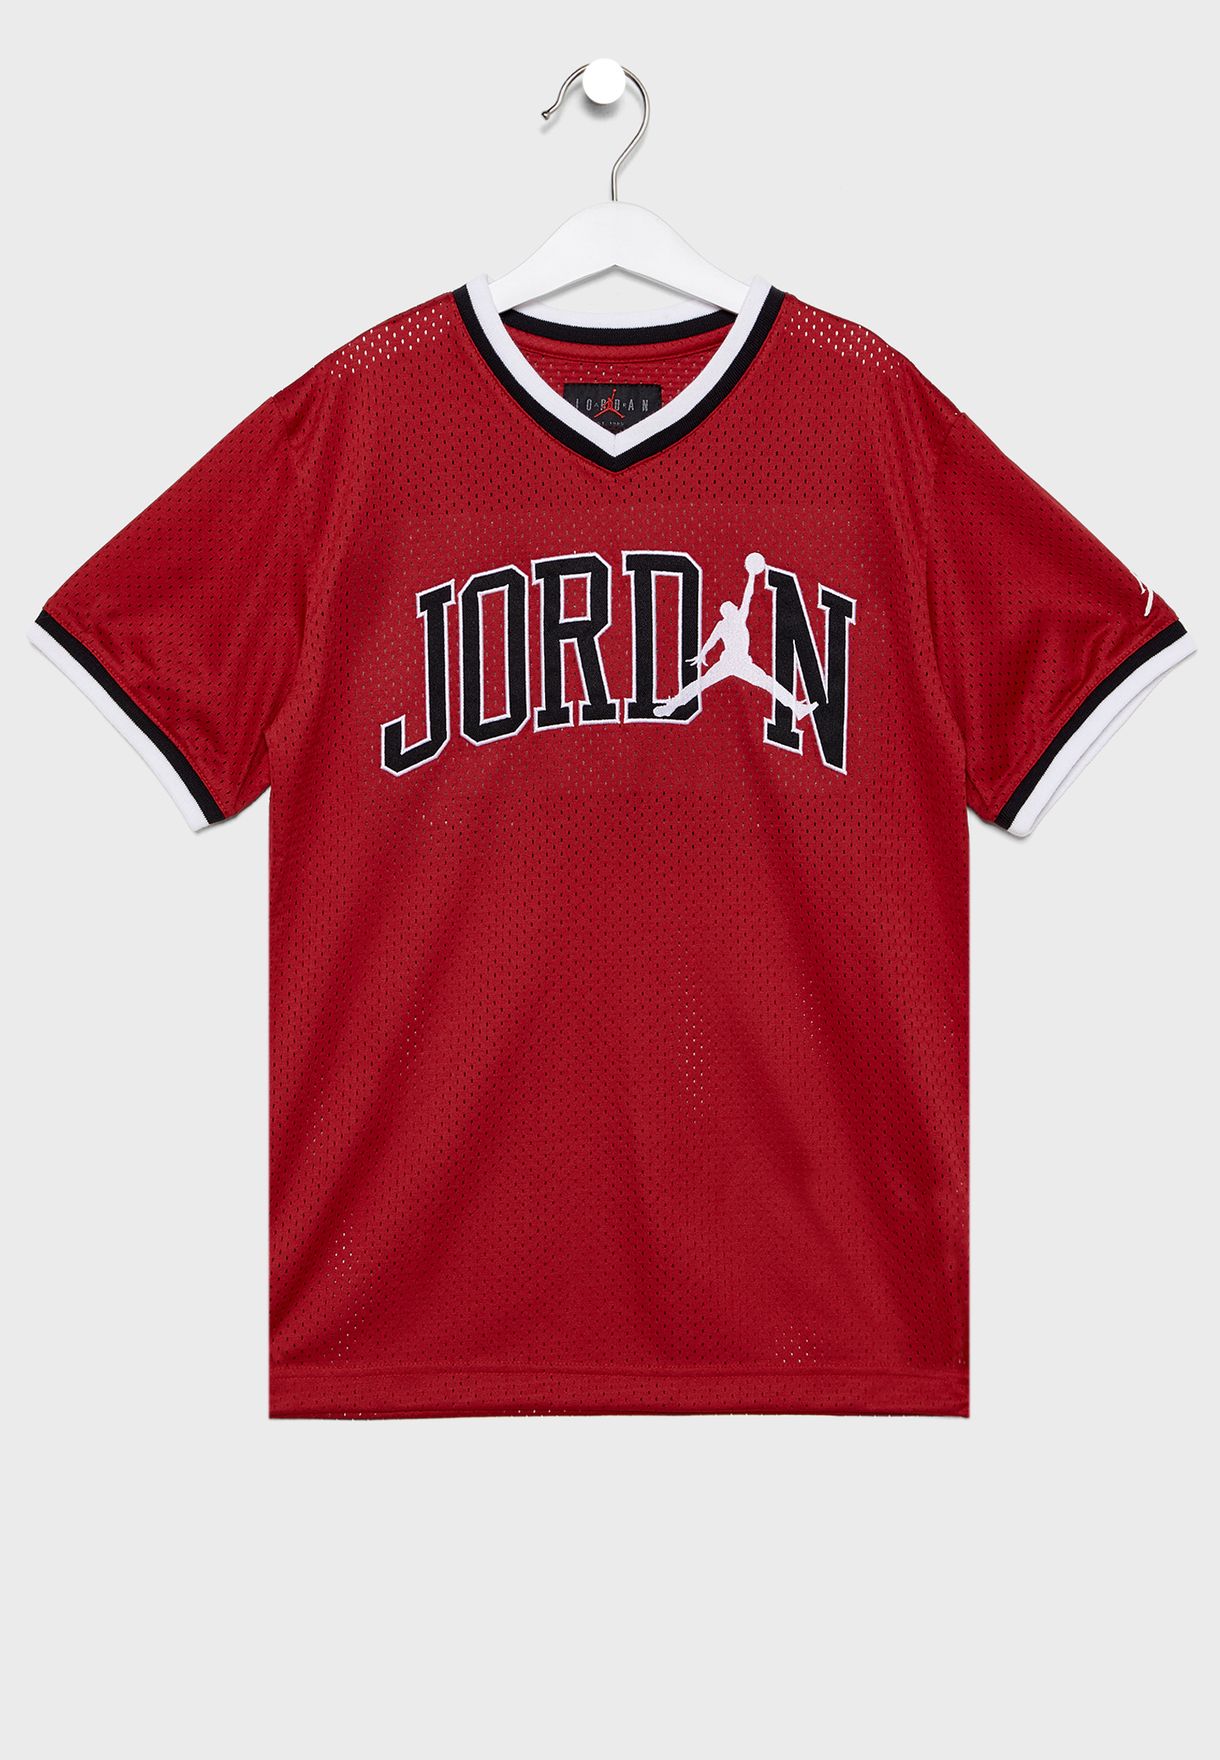 t shirt jordan 23